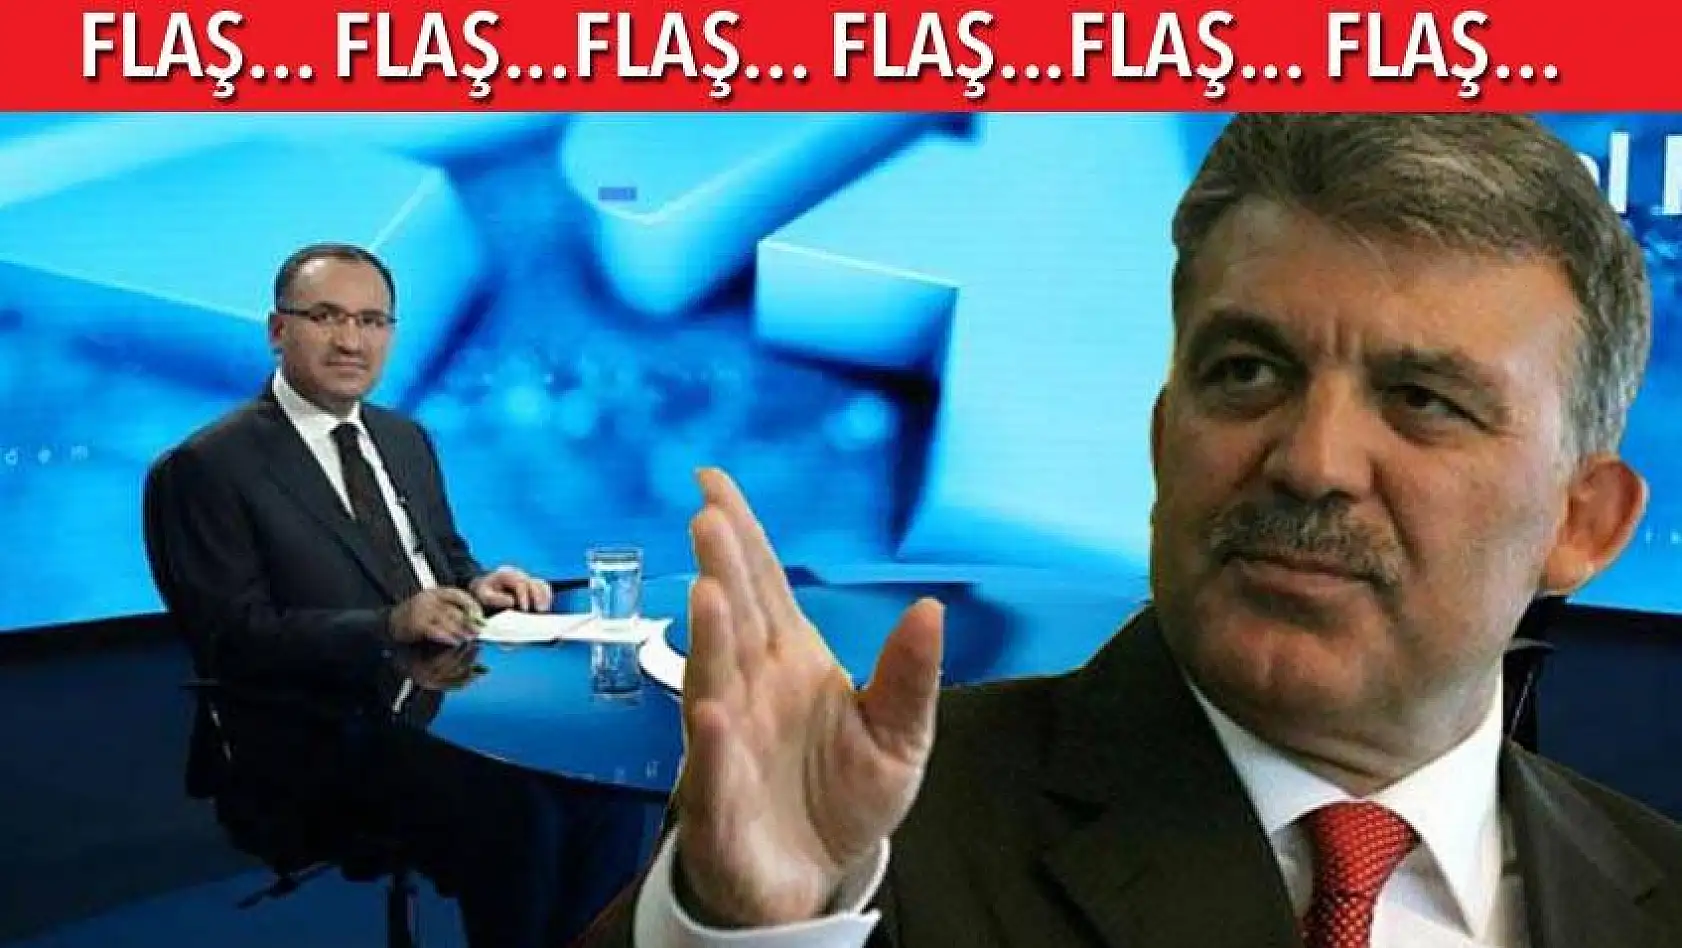  Hükümet Sözcüsü Bozdağ:  Abdullah Gül irtifa kaybetti, üzüldüm